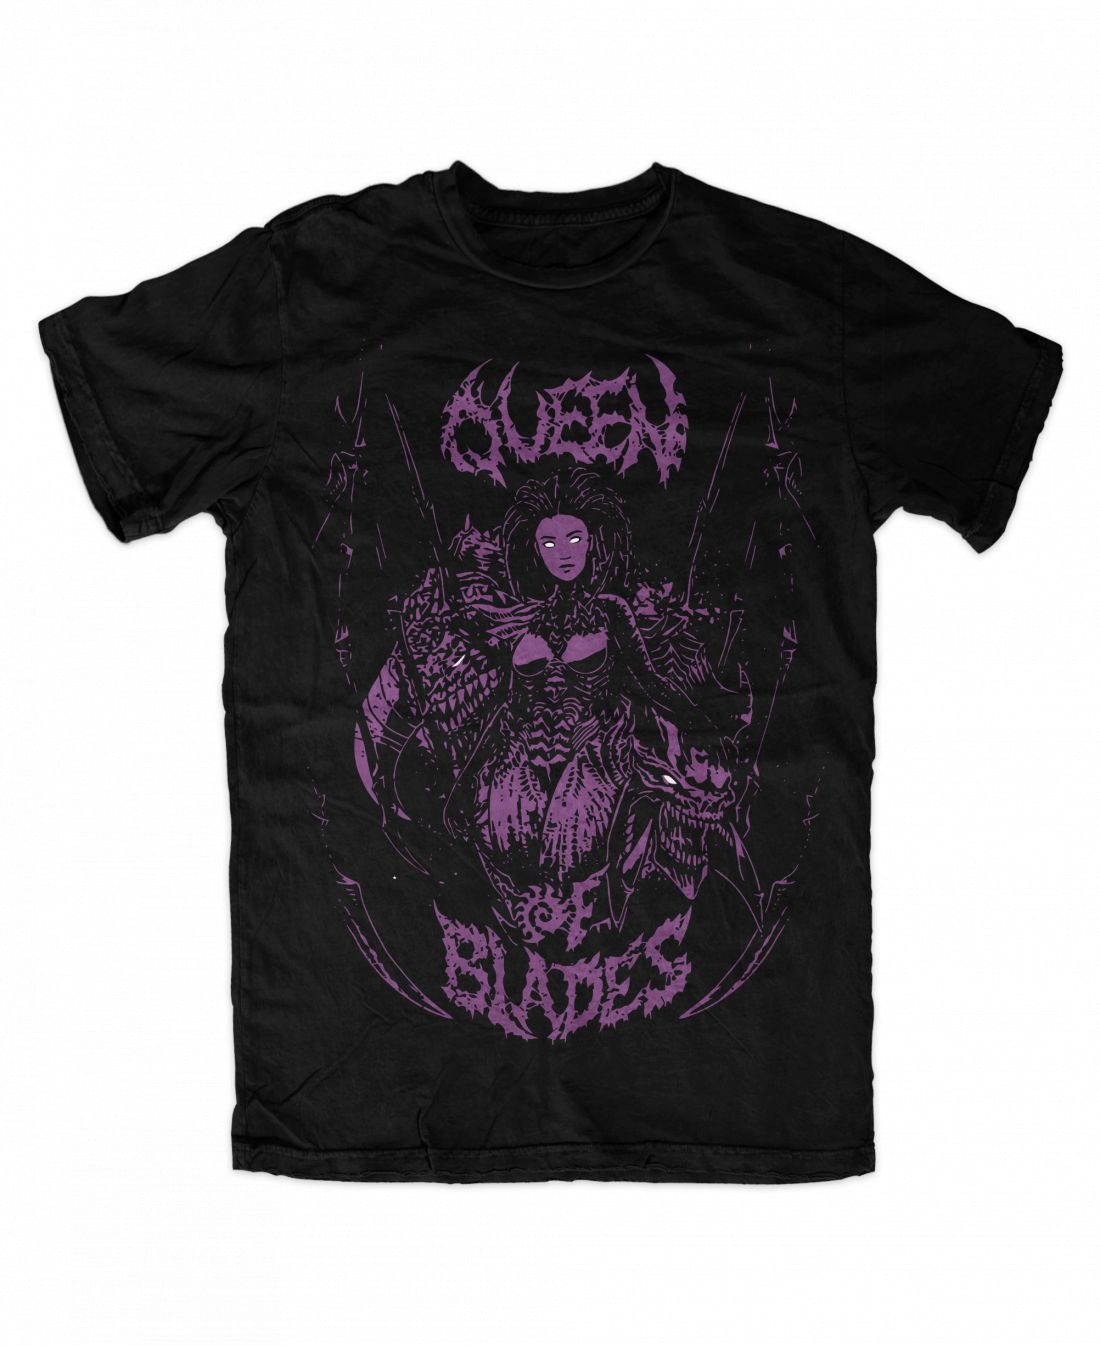 Queen Of Blades